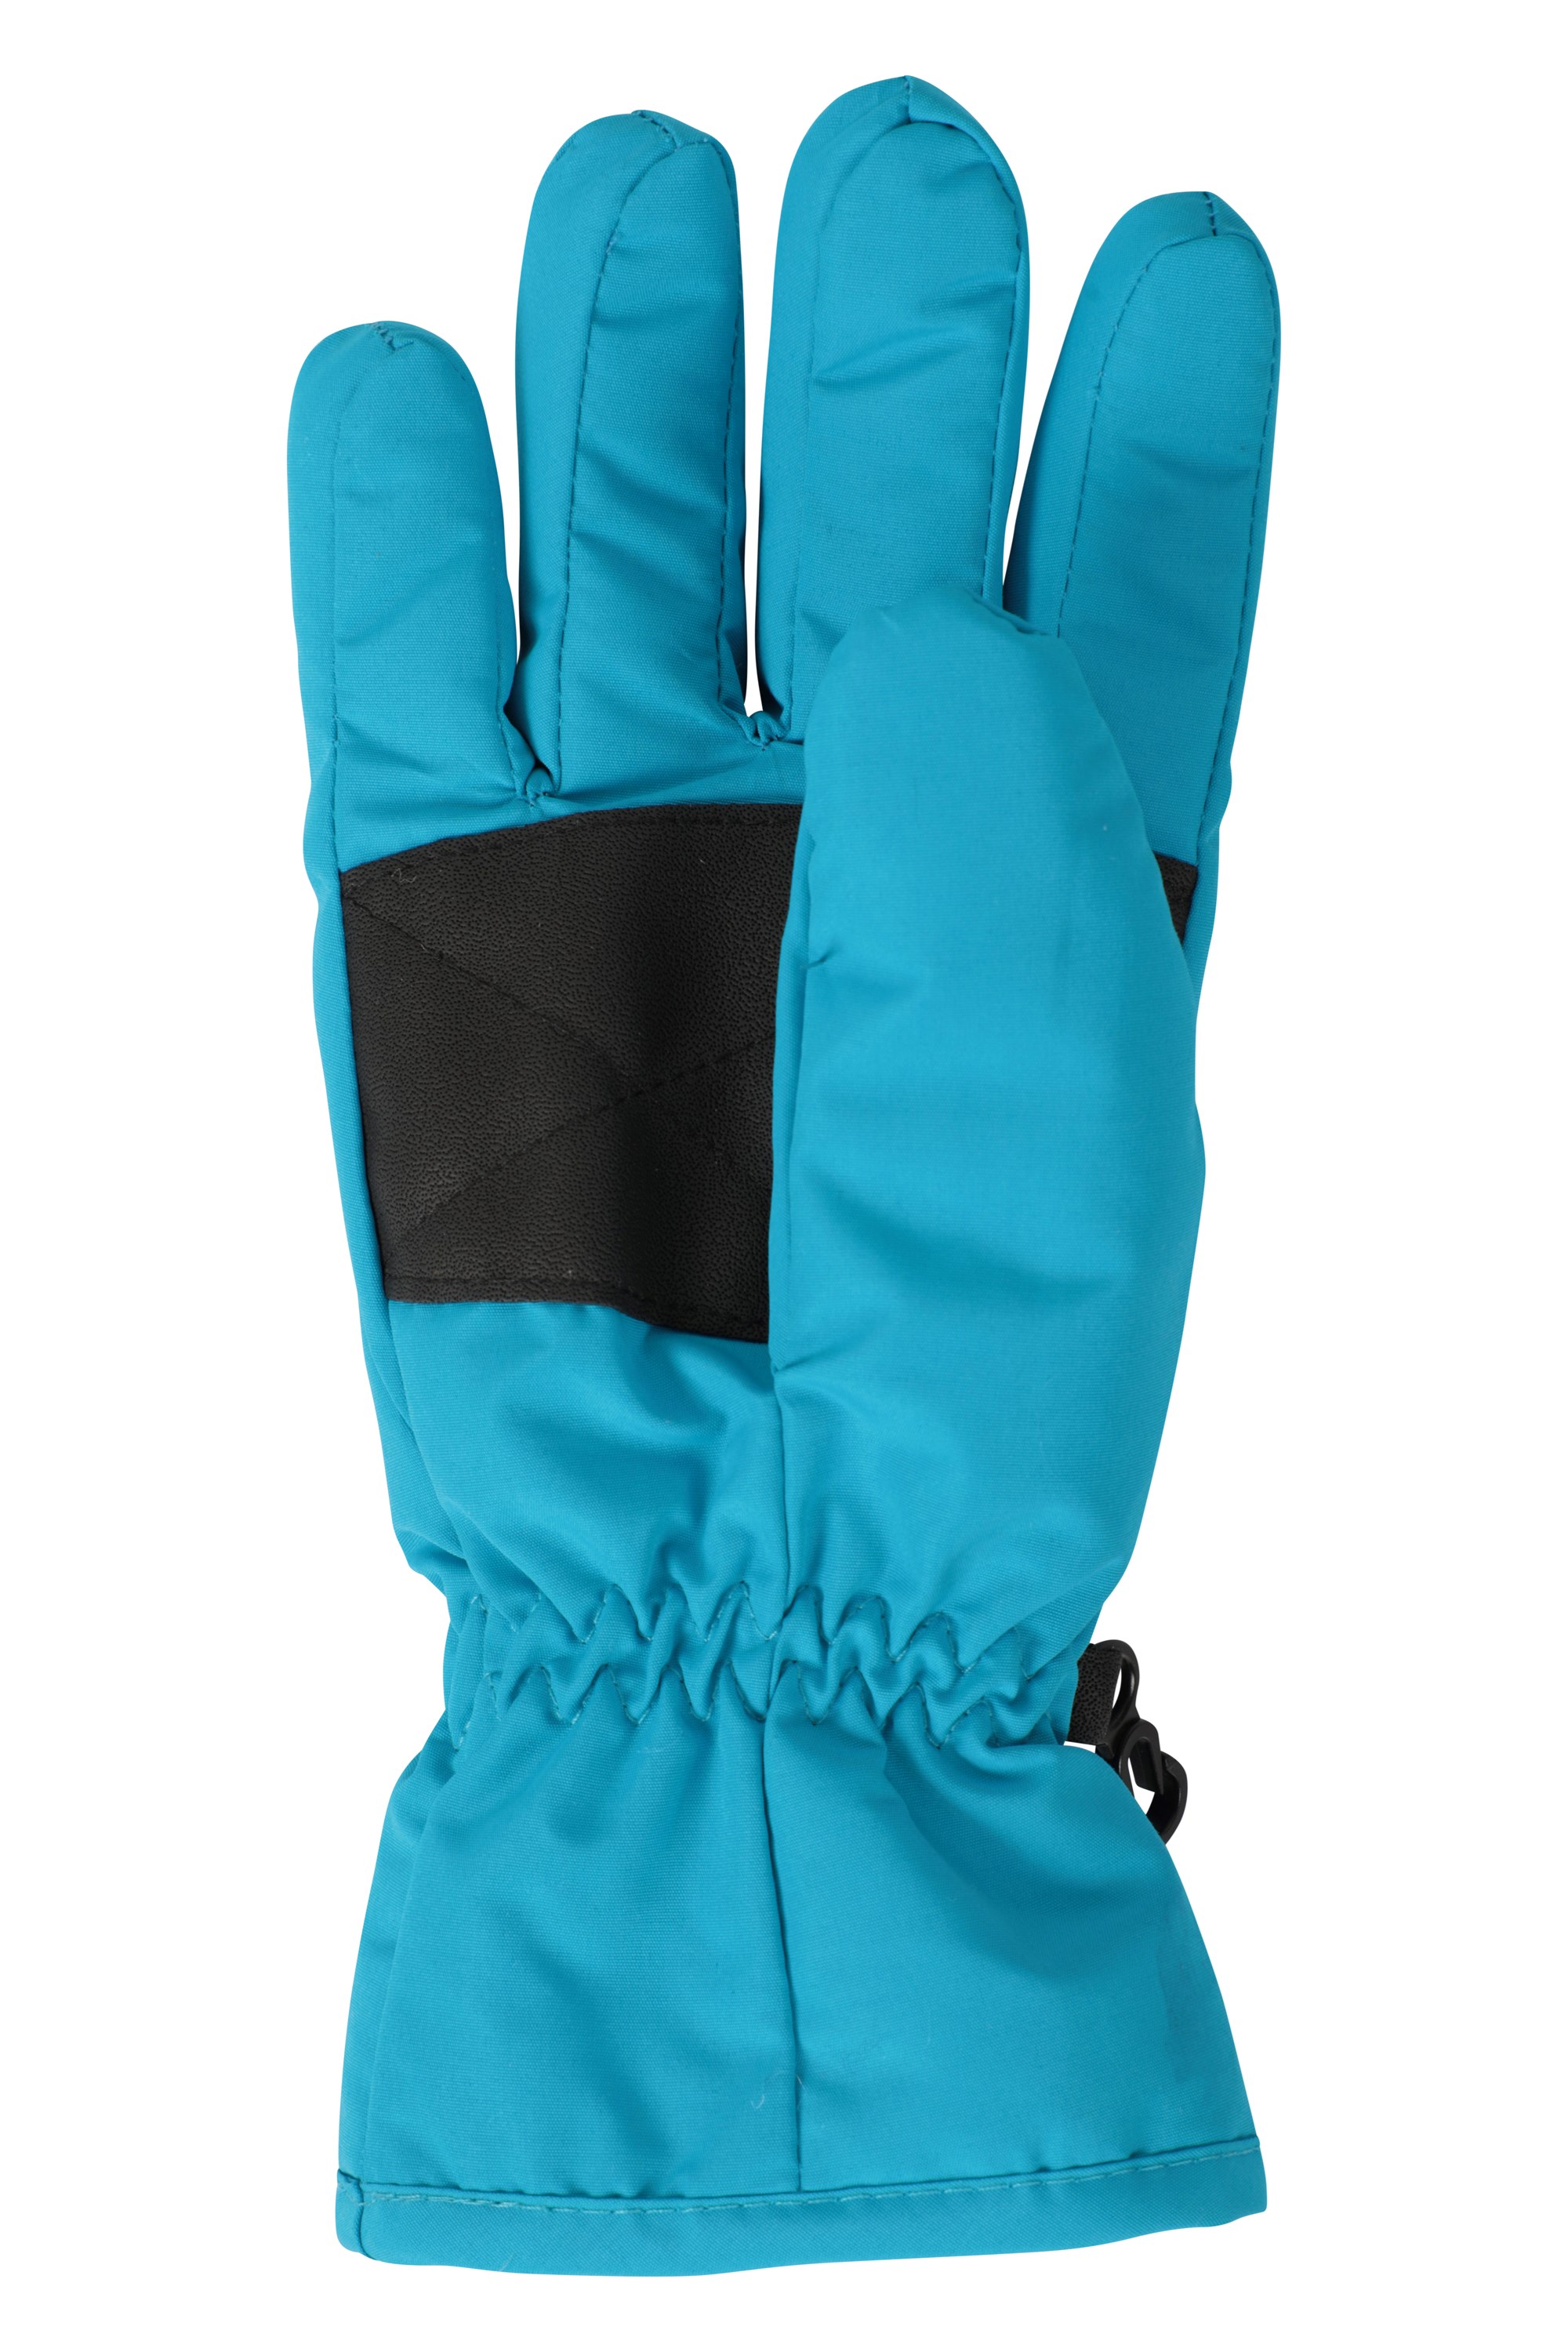 Womens Ski Gloves | Mountain Warehouse US